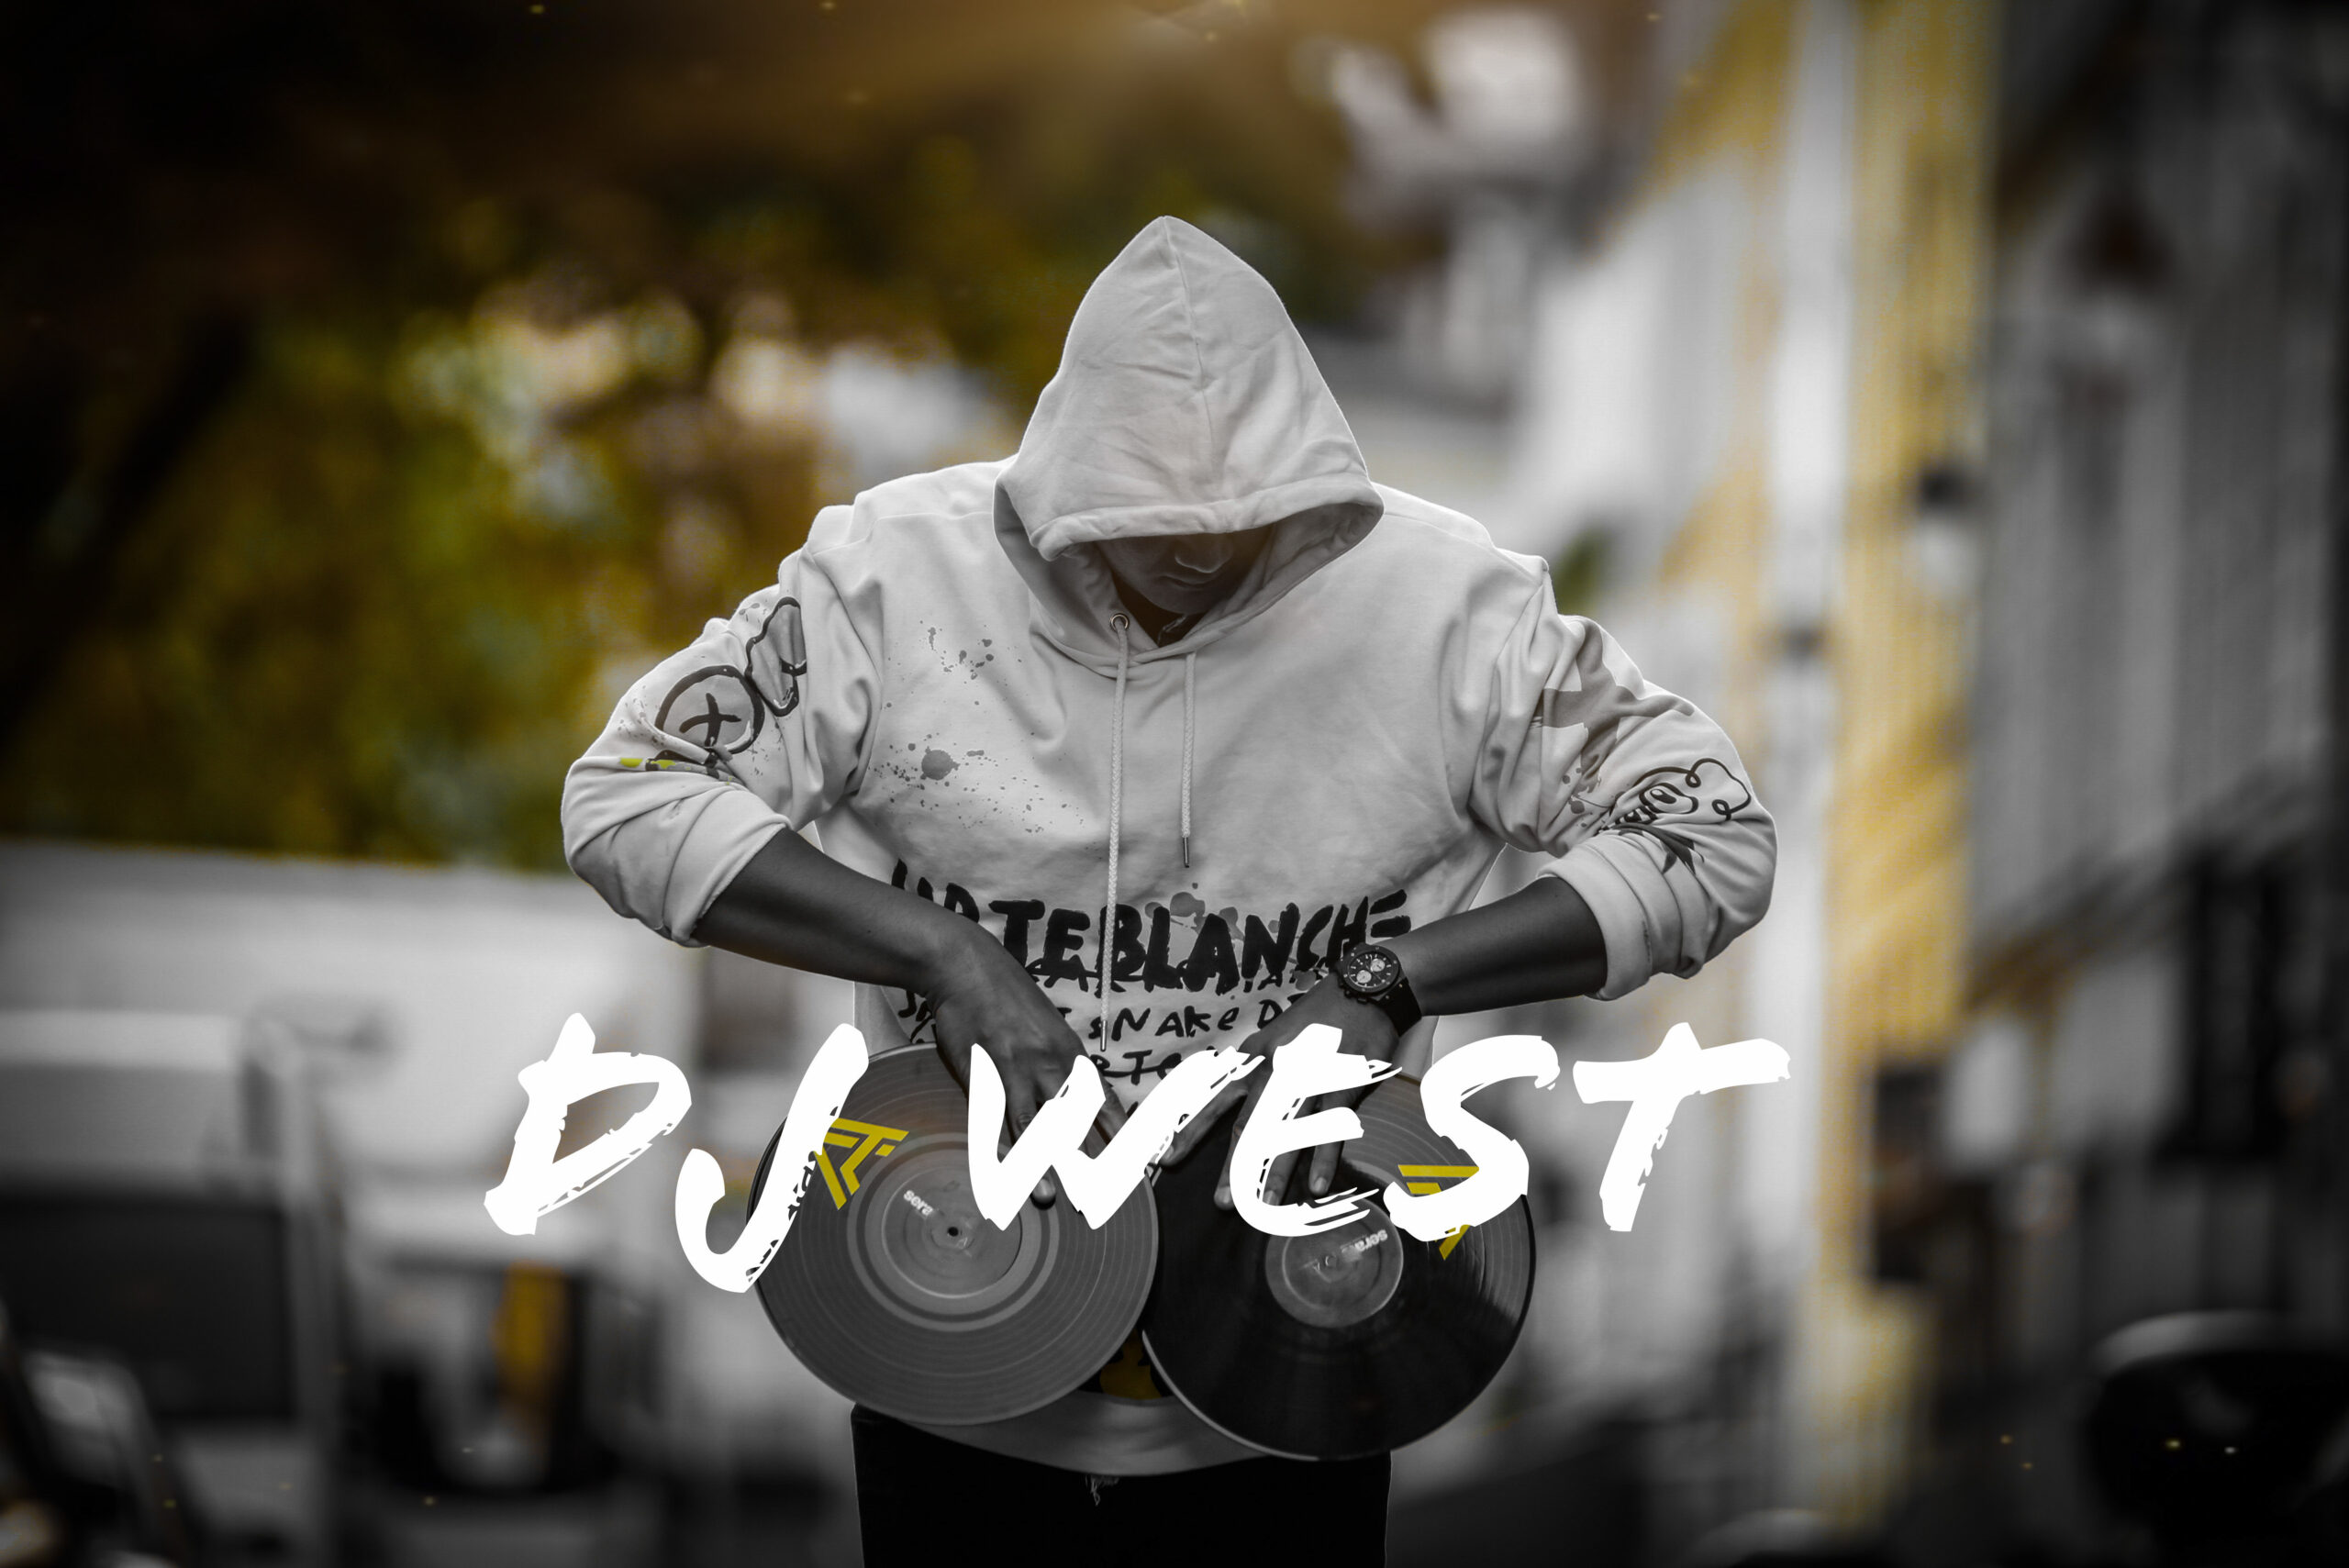 Biographie de DJ WEST - DJ Généraliste France et International depuis ses 16 ans : L'histoire fascinante d'un DJ renommé en France et à l'international